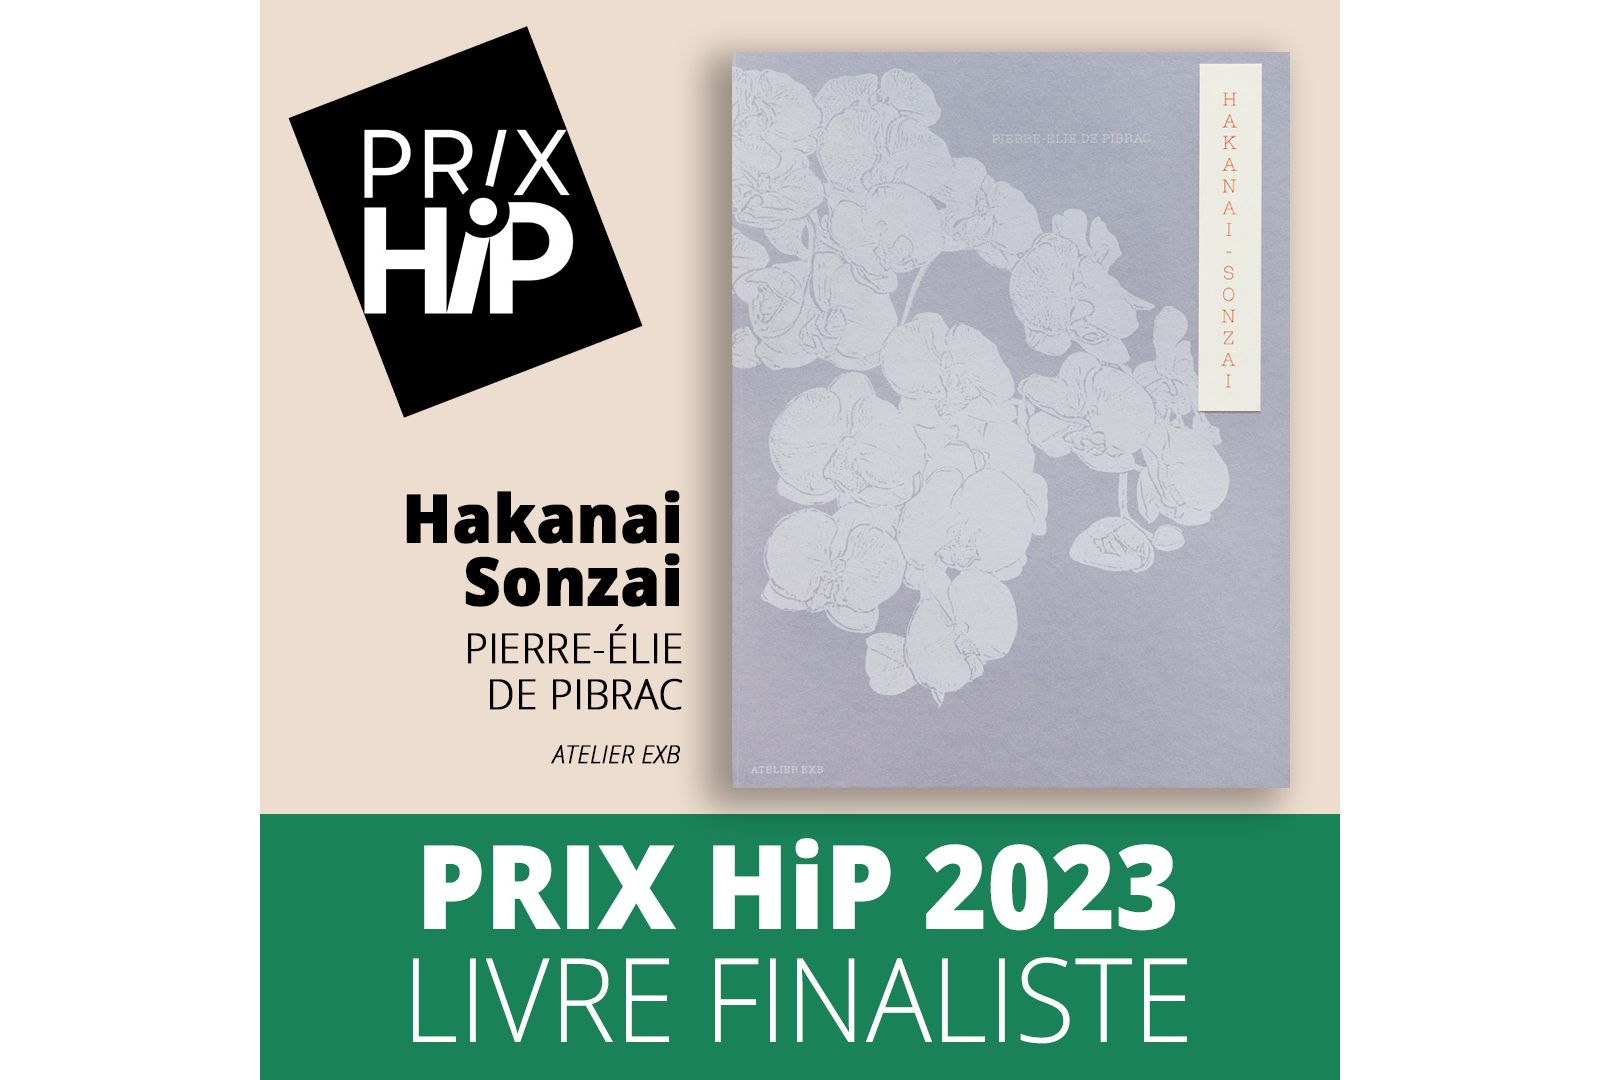 Les prix HiP 2023 Livre finaliste